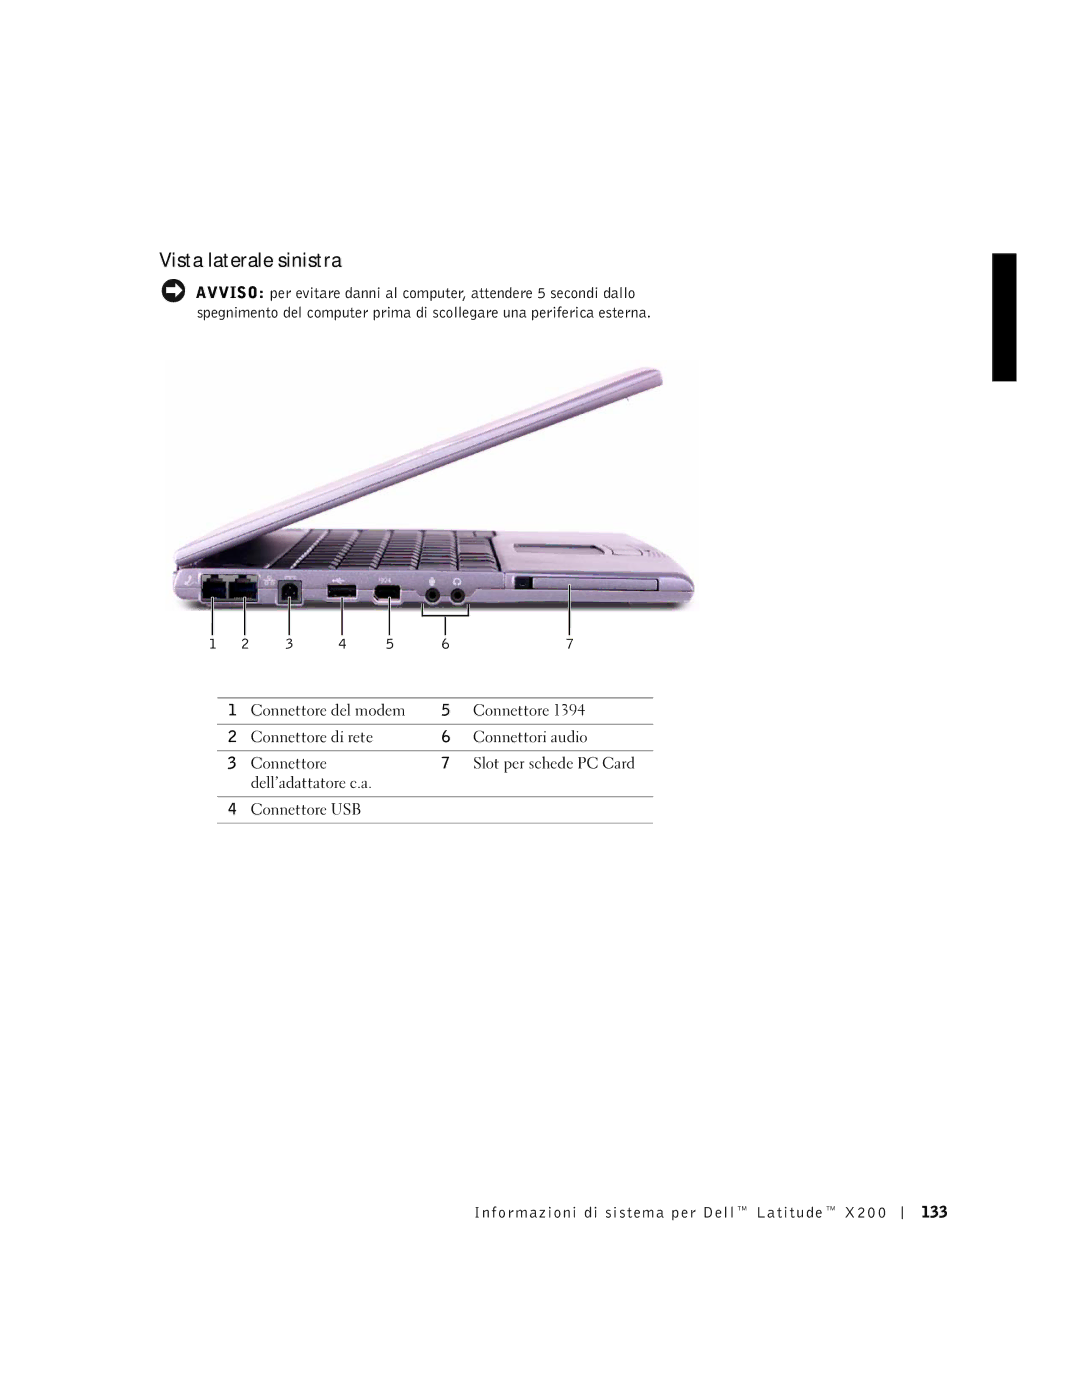 LeapFrog PP03S manual Vista laterale sinistra, Informazioni di sistema per Dell Latitude 133 